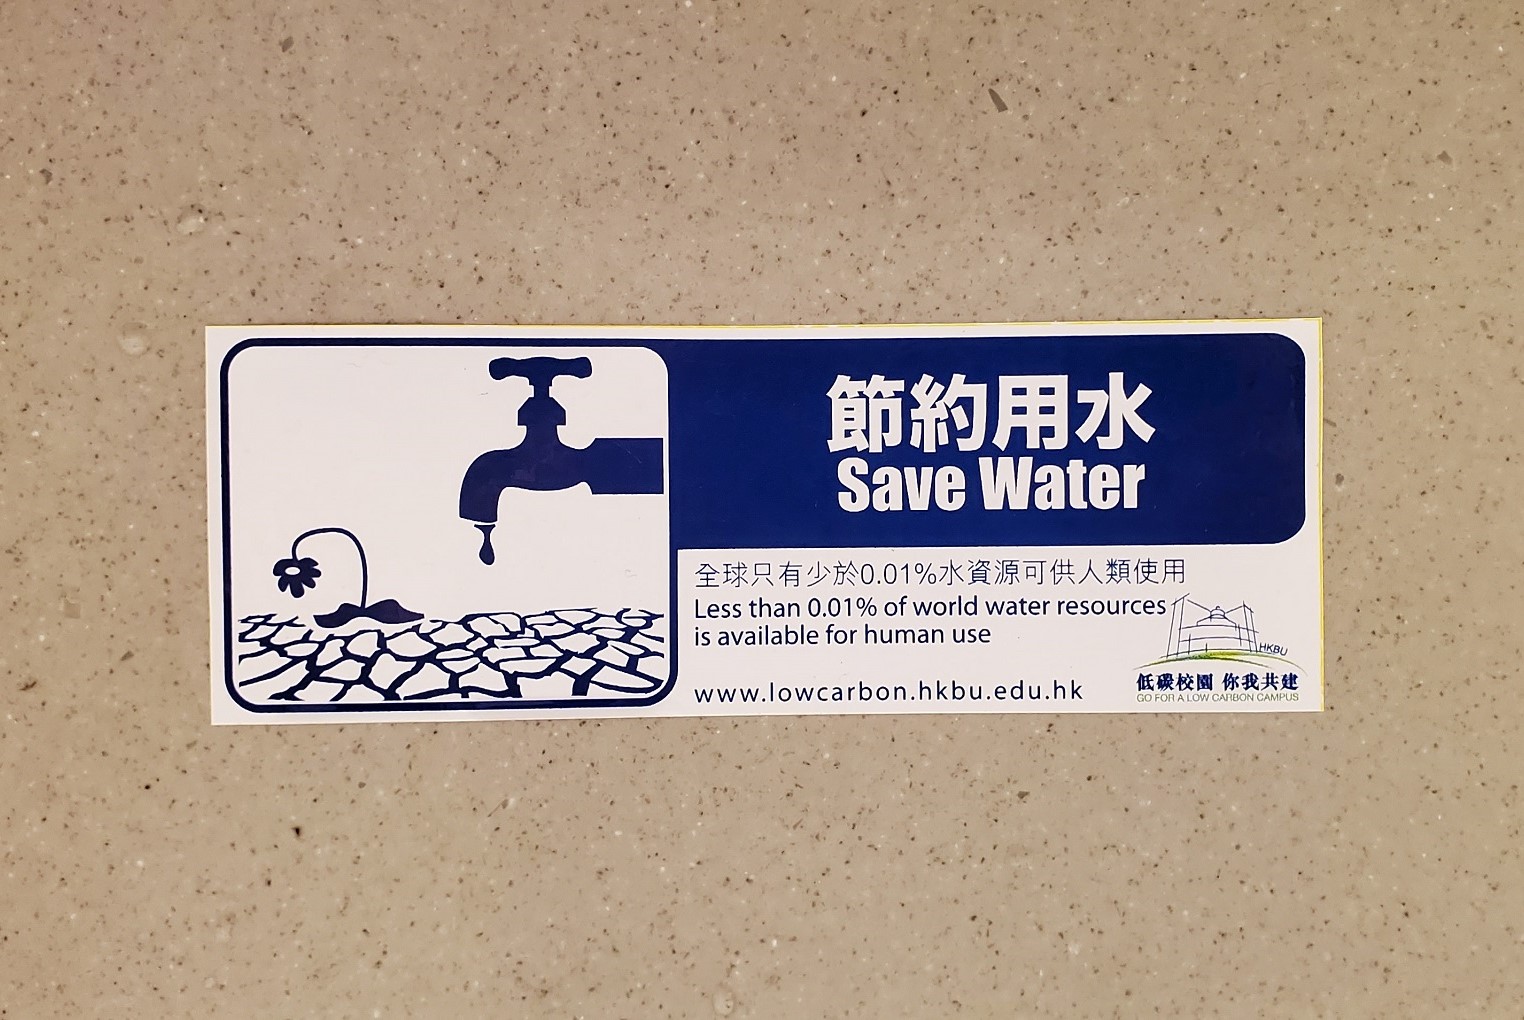 Water Saving Reminder for Handwashing